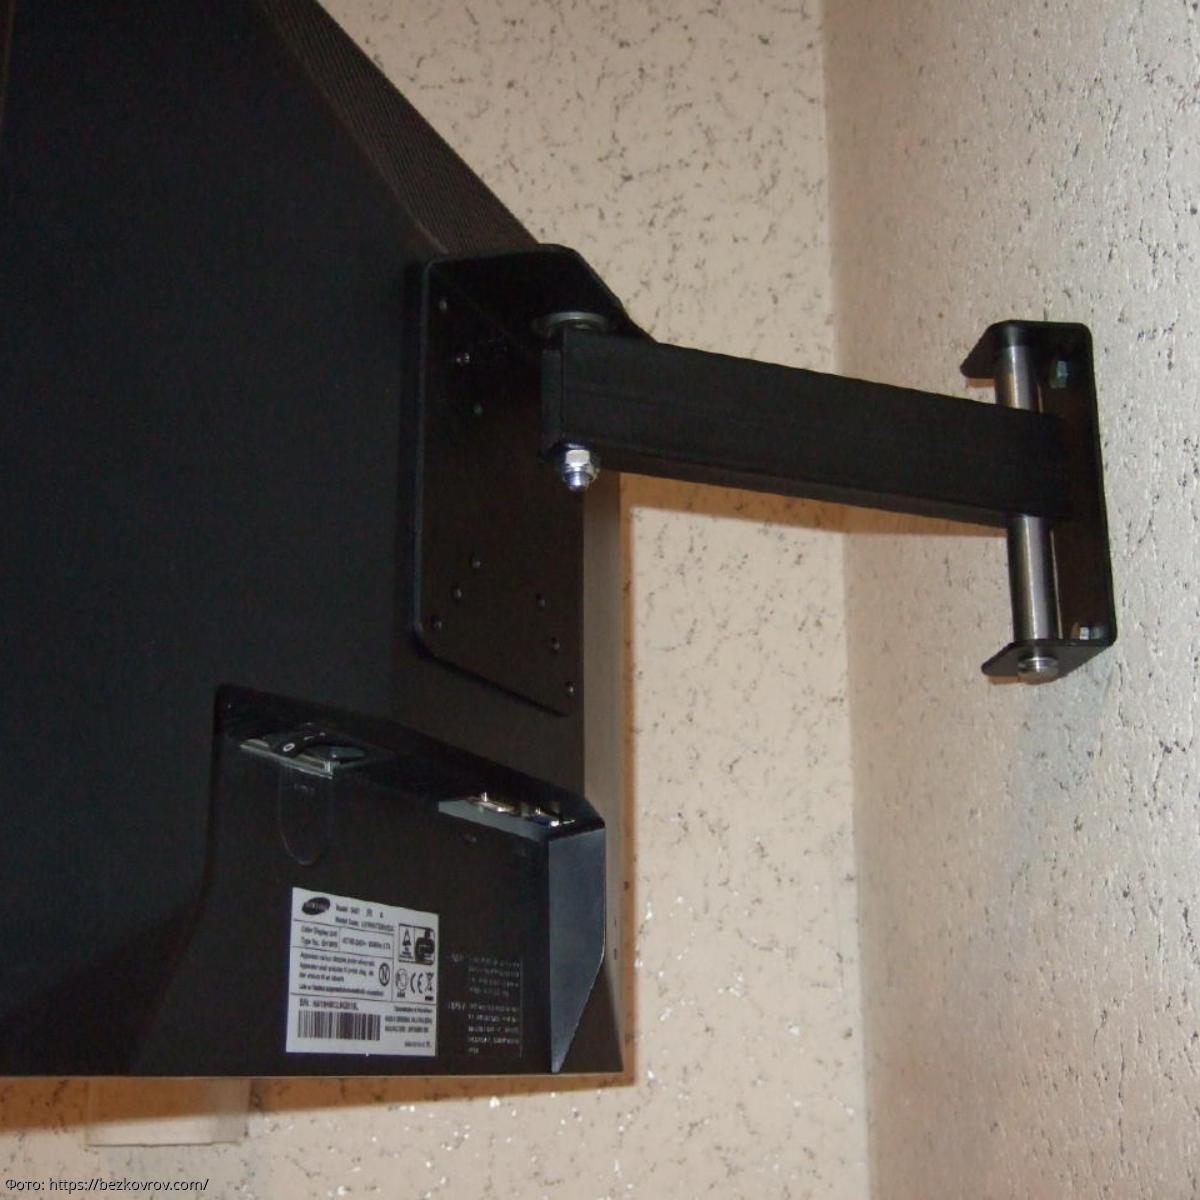 Кронштейн стенового крепления. Кронштейн для крепления монитора Acer s230hl к стене. Кронштейн для телевизора e306530. Hitechnic кронштейн для ЭЛТ телевизора 14. Кронштейн для телевизора vlf210.